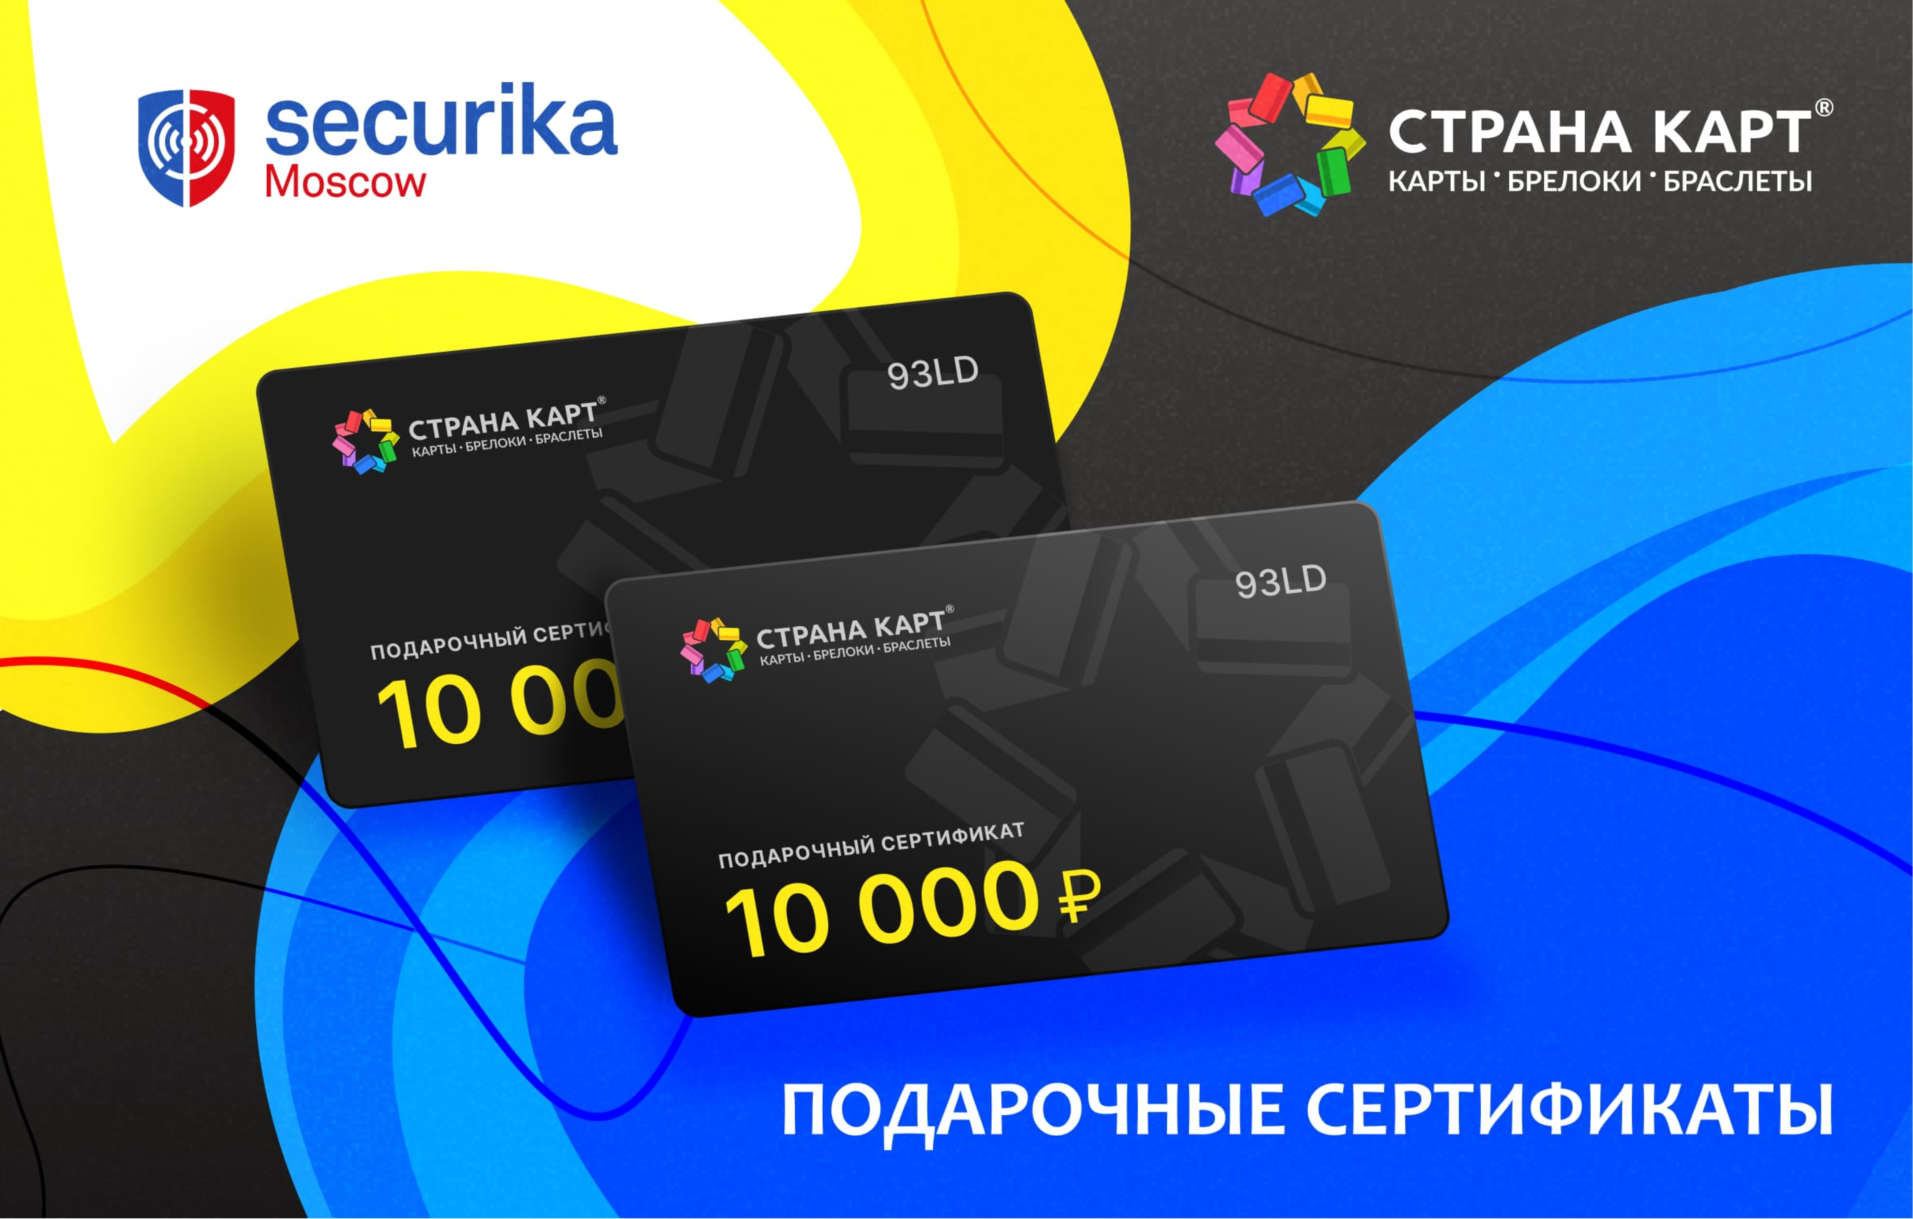 Сертификат 10 000 рублей от «Страны карт» Сертификат 10 000 рублей от «Страны карт» на Securika Moscow 2023